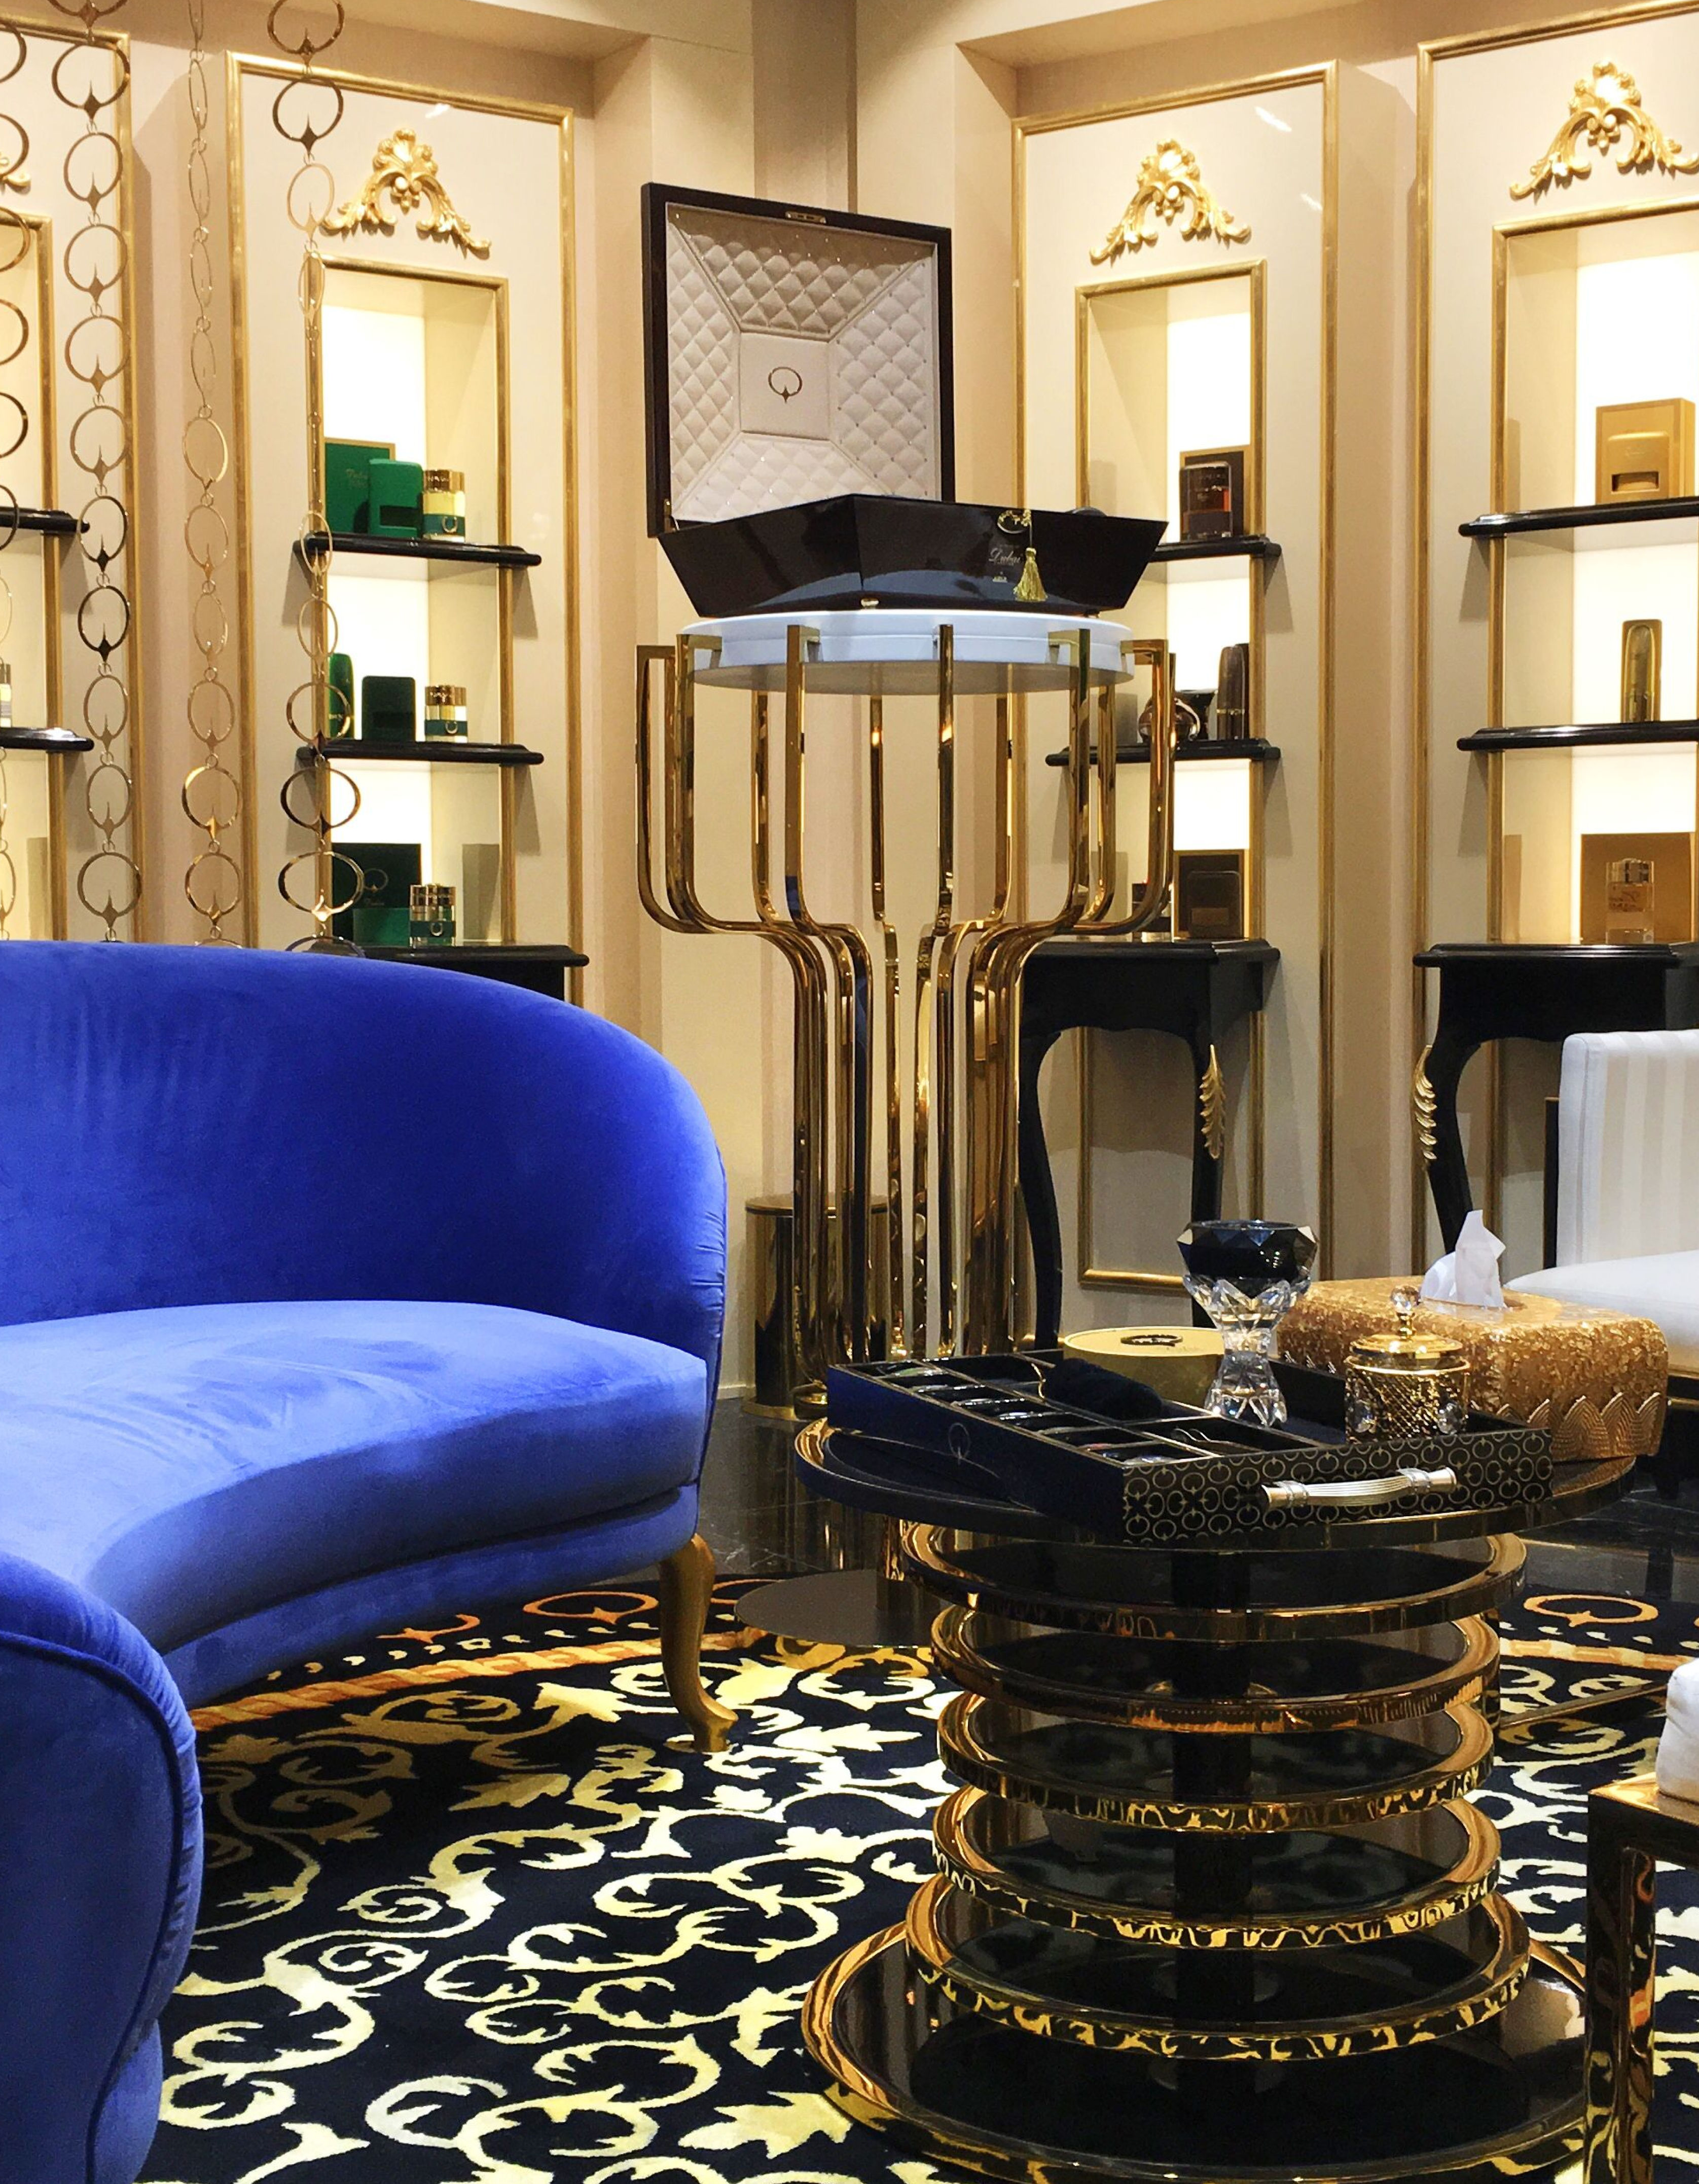 Atteline PR - Spirit of Dubai interior designs